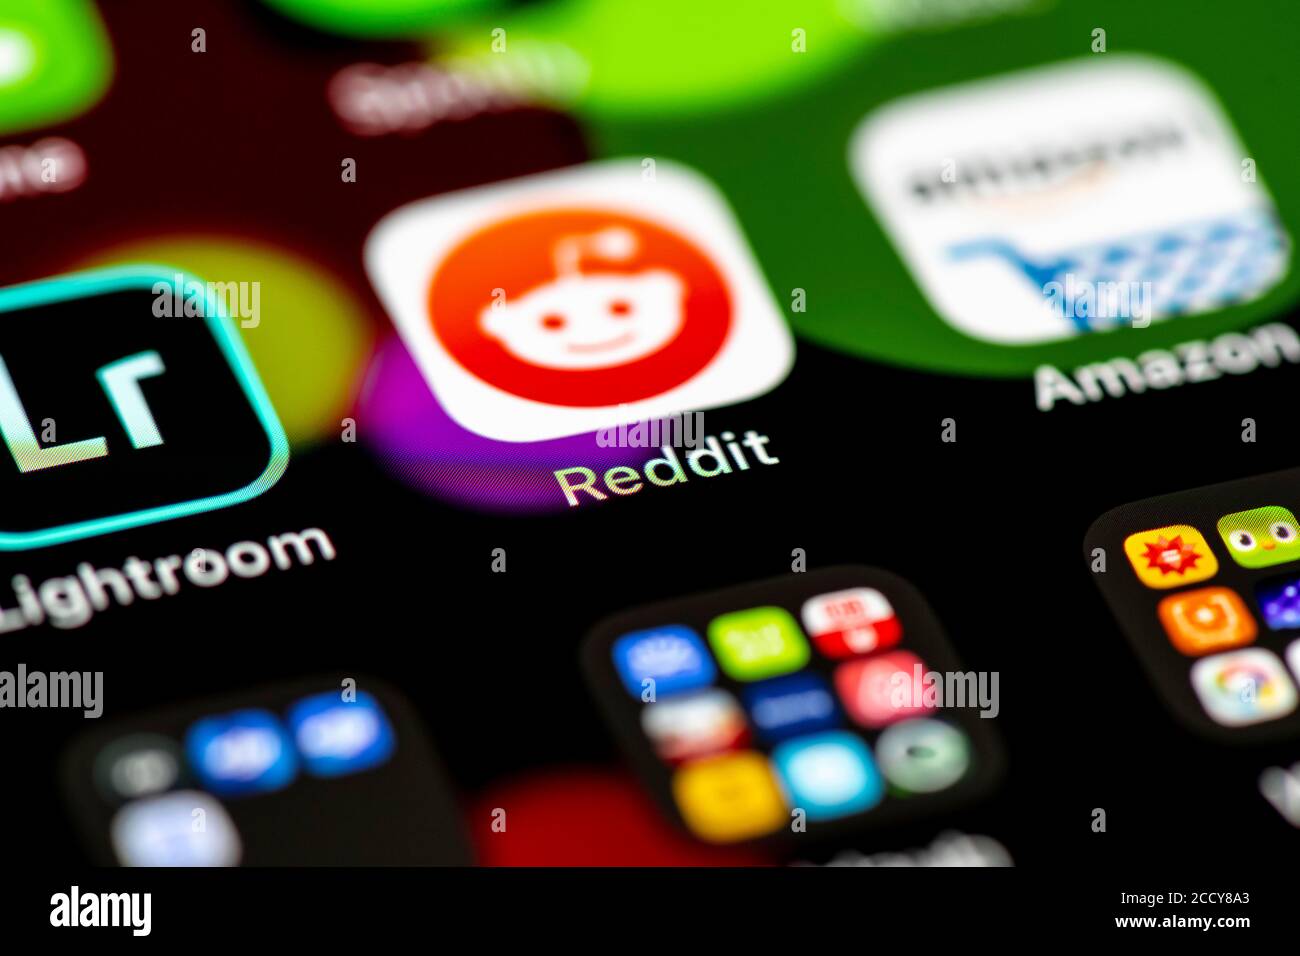 Reddit, soziale Medien, App-Symbole auf einem Handy-Display, iPhone, Smartphone, Nahaufnahme, Vollbild Stockfoto